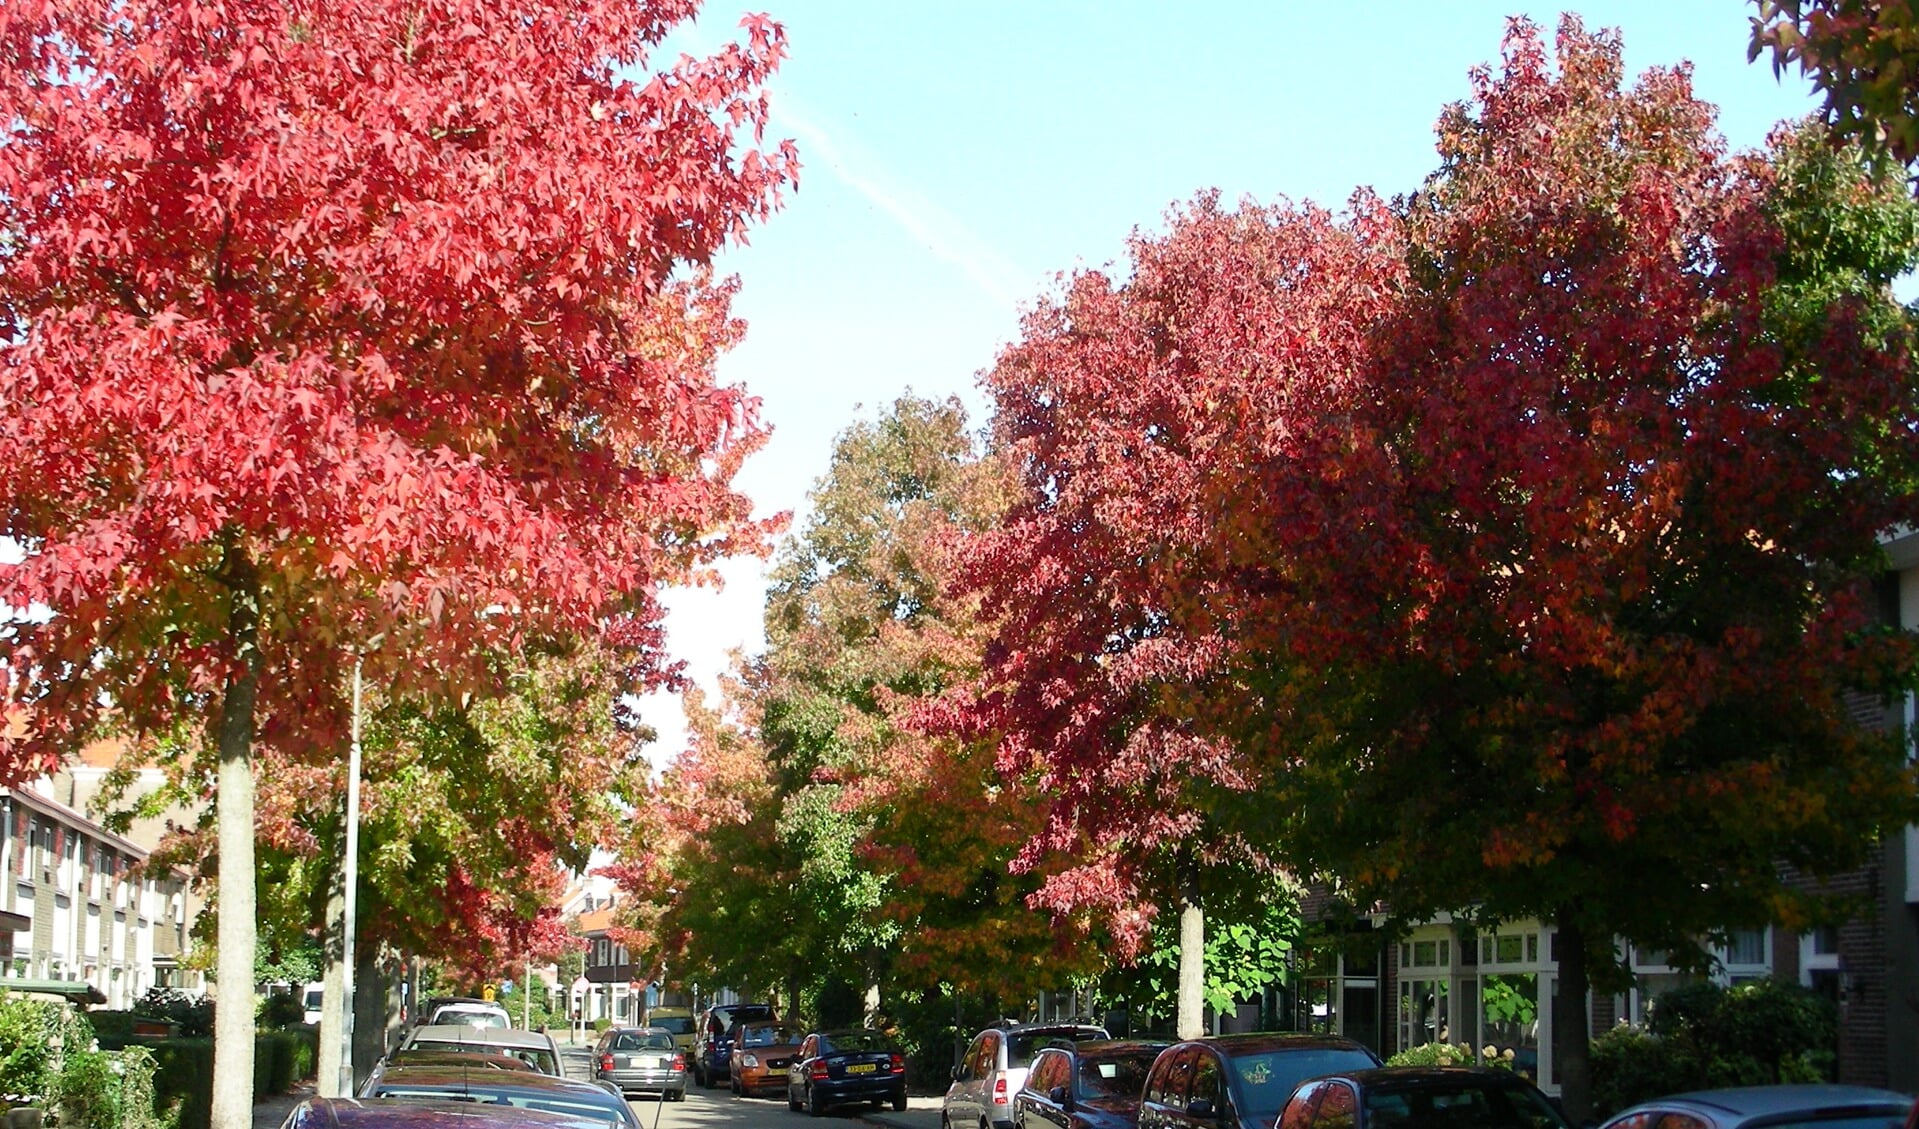 HAARLEM - De gekleurde bladeren aan de bomen verraden het seizoen. De herfst heeft z'n intrede gedaan. Maar de warmte die de zon nog uitstraalt voelt nog zeer zomers aan. Dat bleek ook weer deze week, waarbij temperaturen van rond de 25/26 graden eenvoudig werden gehaald. Herfst met een echt zomers